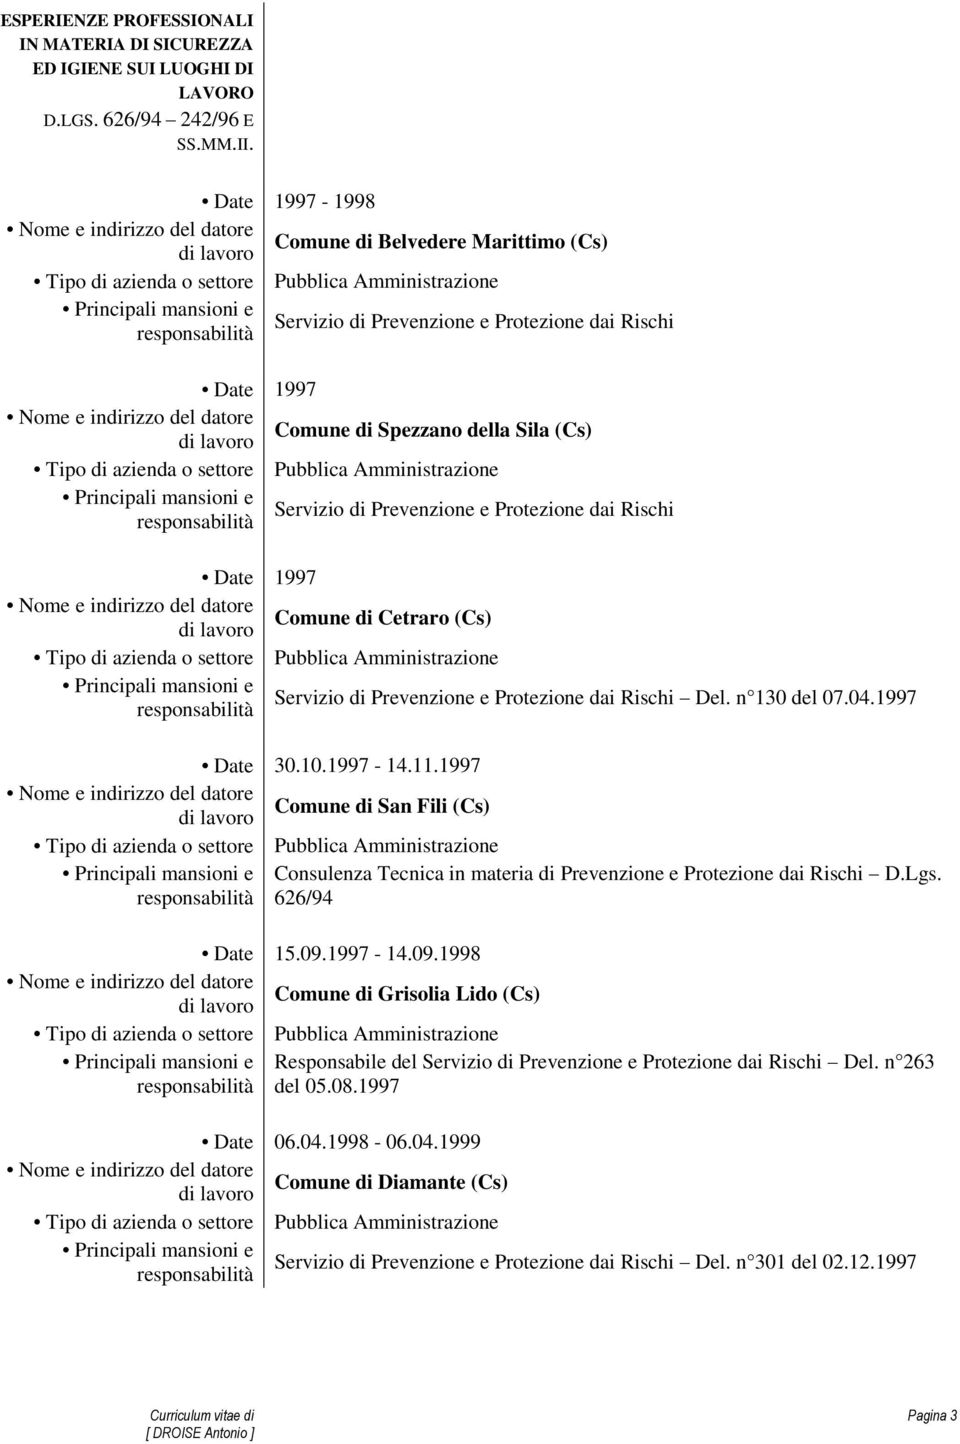 1997 Comune di Cetraro (Cs) Servizio di Prevenzione e Protezione dai Rischi Del. n 130 del 07.04.1997 Date 30.10.1997-14.11.